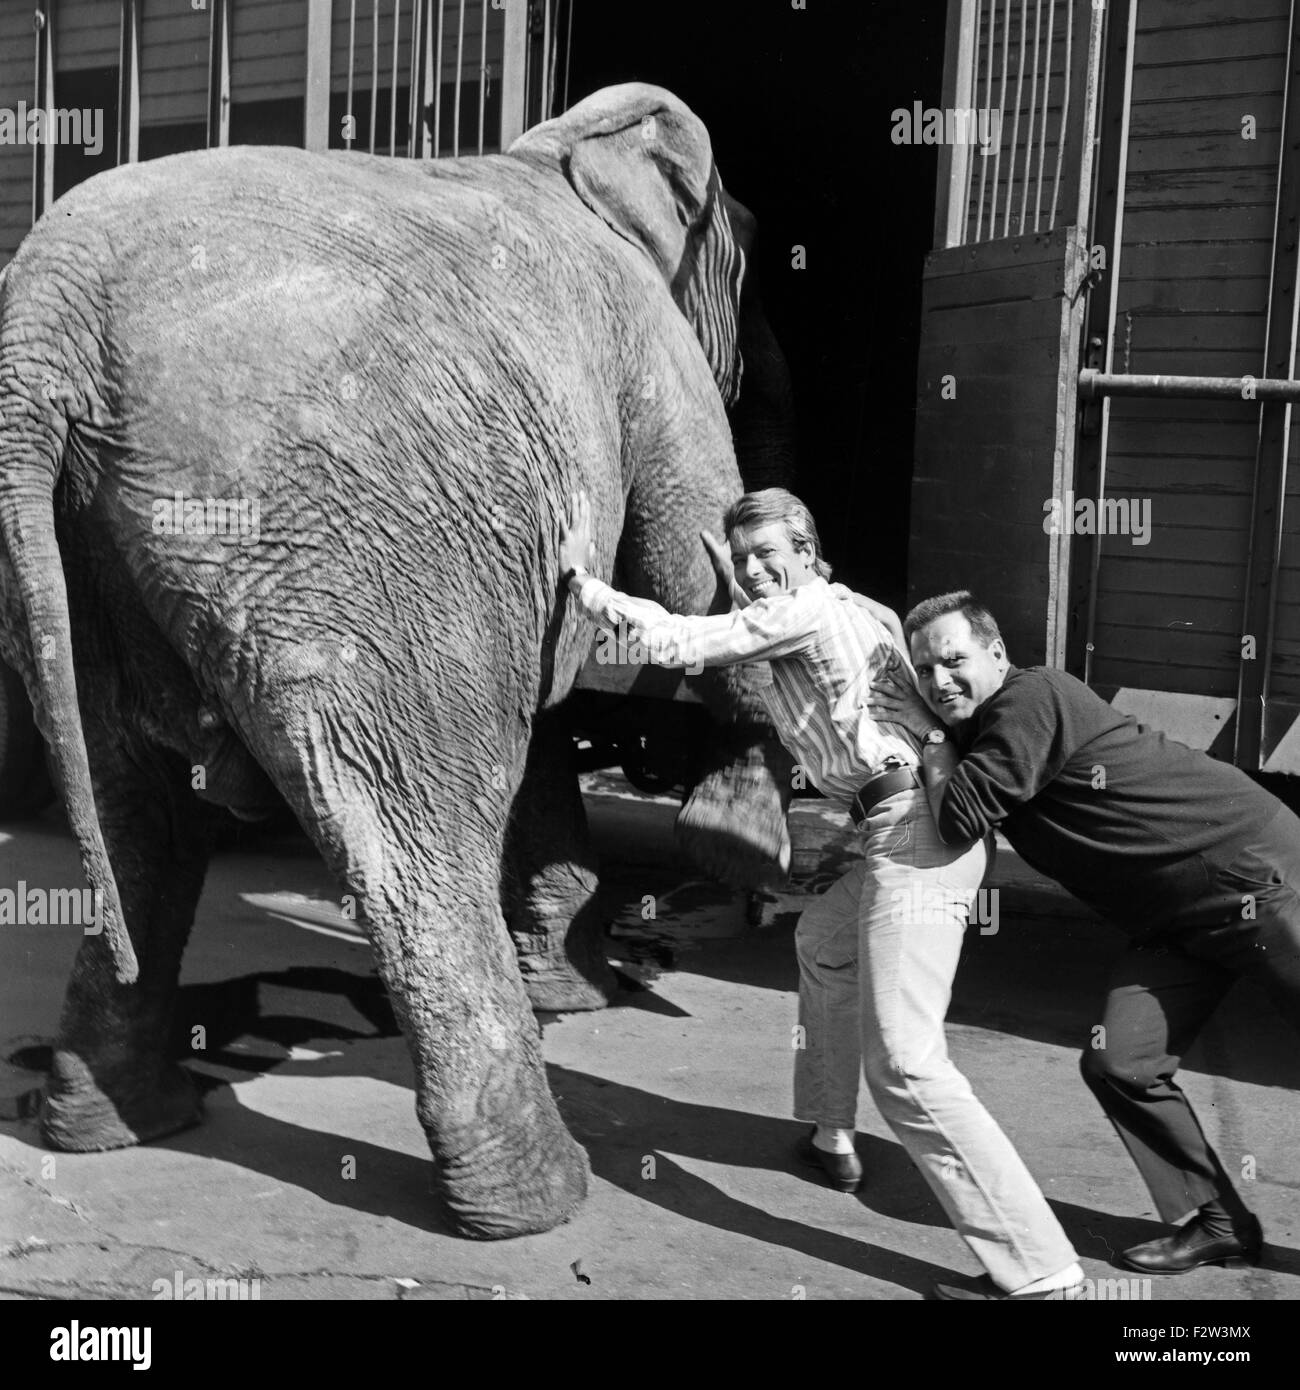 Ein Elefant auf dem Weg ins Studio des ZDF in Hamburg, Deutschland 1960er Jahre. An elephant on the way to the studio of German TV station Zweites Deutsches Fernsehen at Hamburg, Germany 1960s. Stock Photo